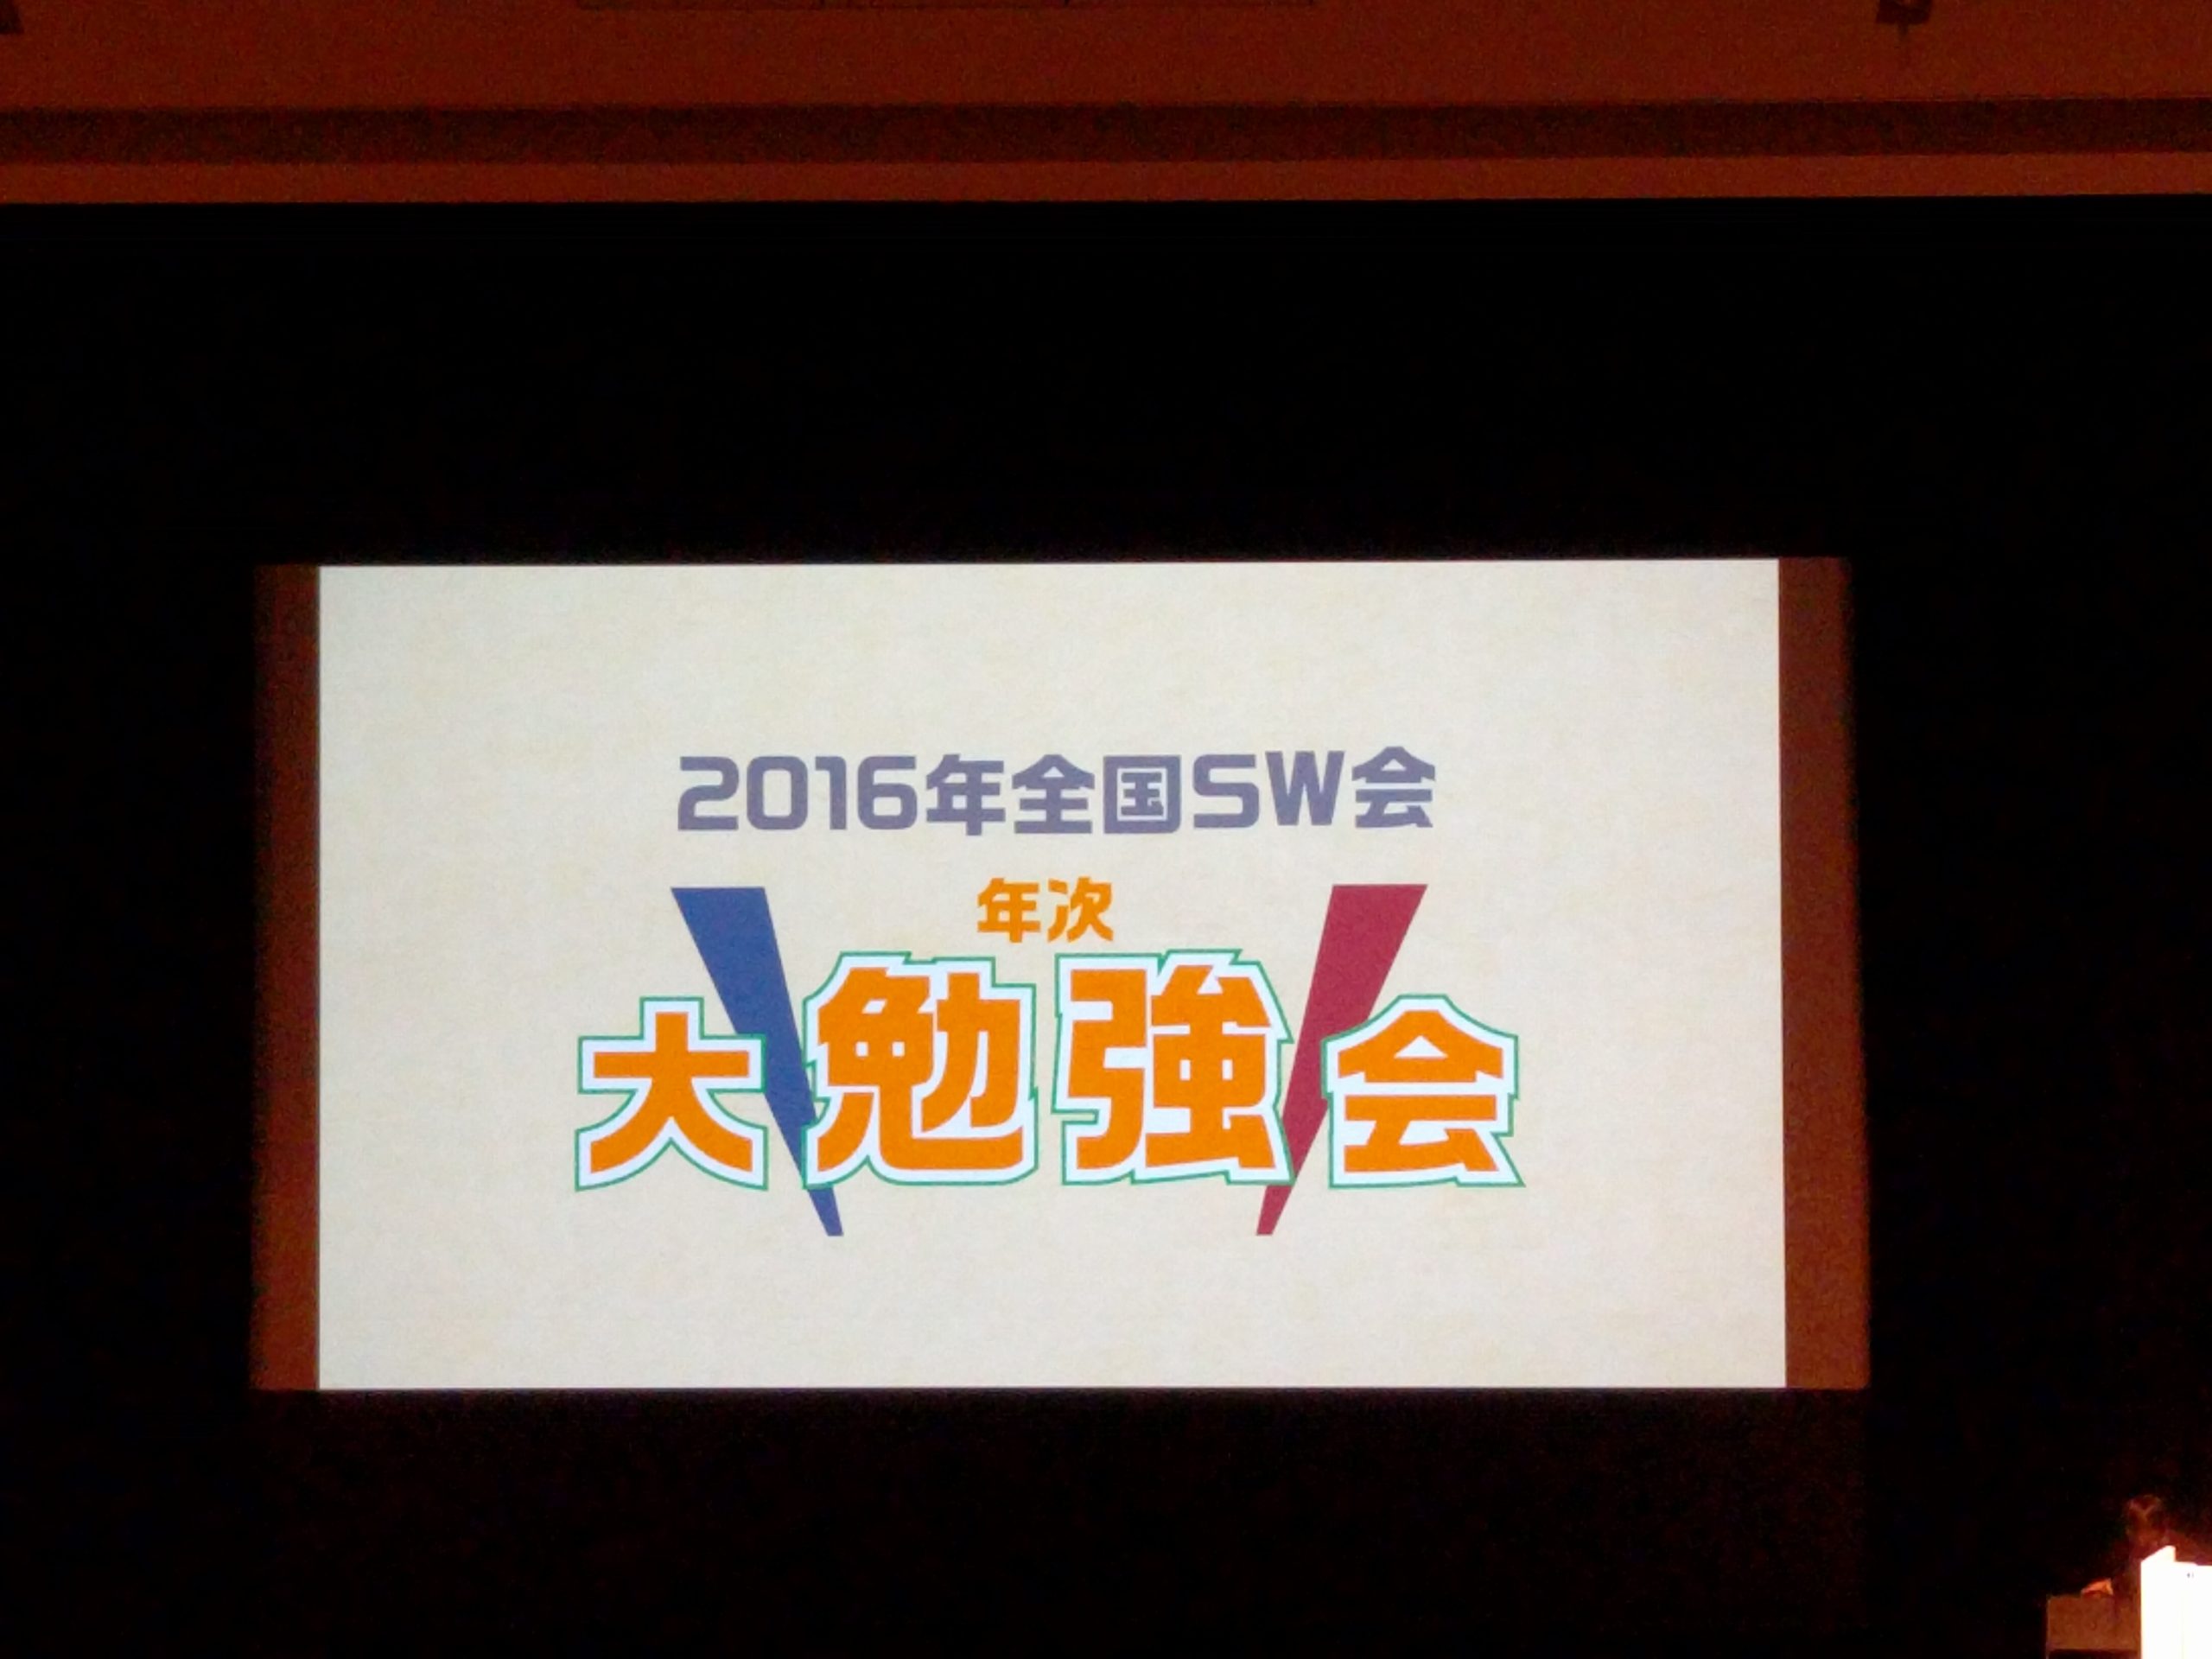 熊本震災の実体験をSW会全国勉強会でききました